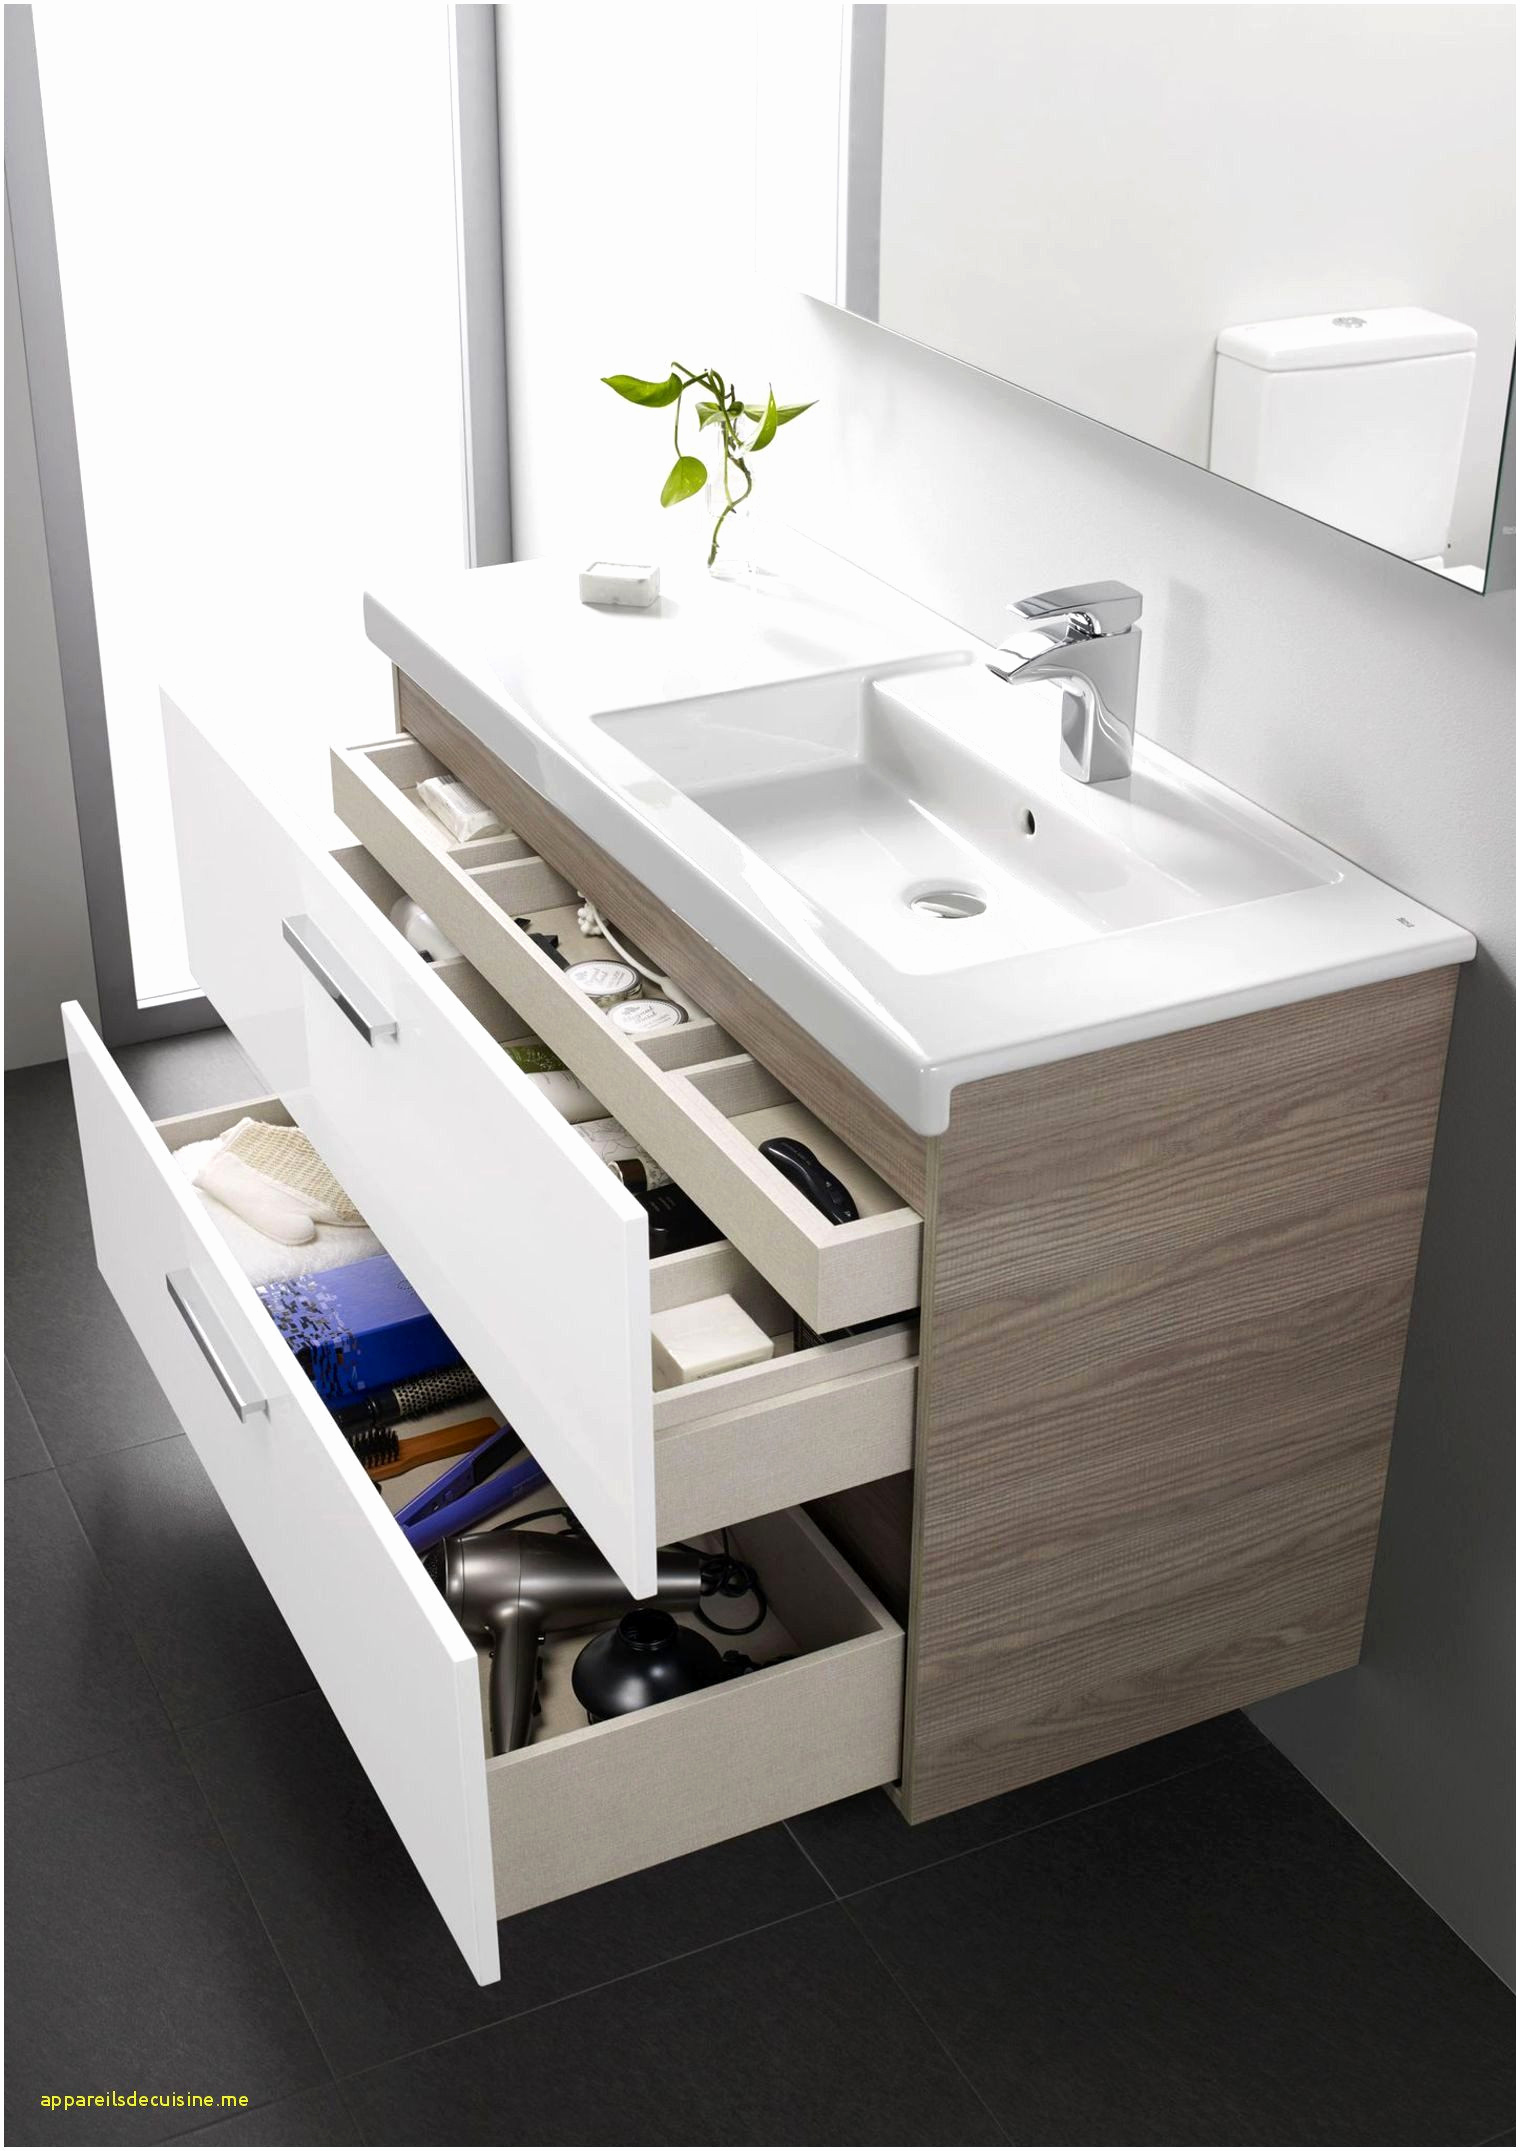 salle de bain en teck nouveau meuble salle de bain bois pas cher meubles en teck charmant meuble of salle de bain en teck